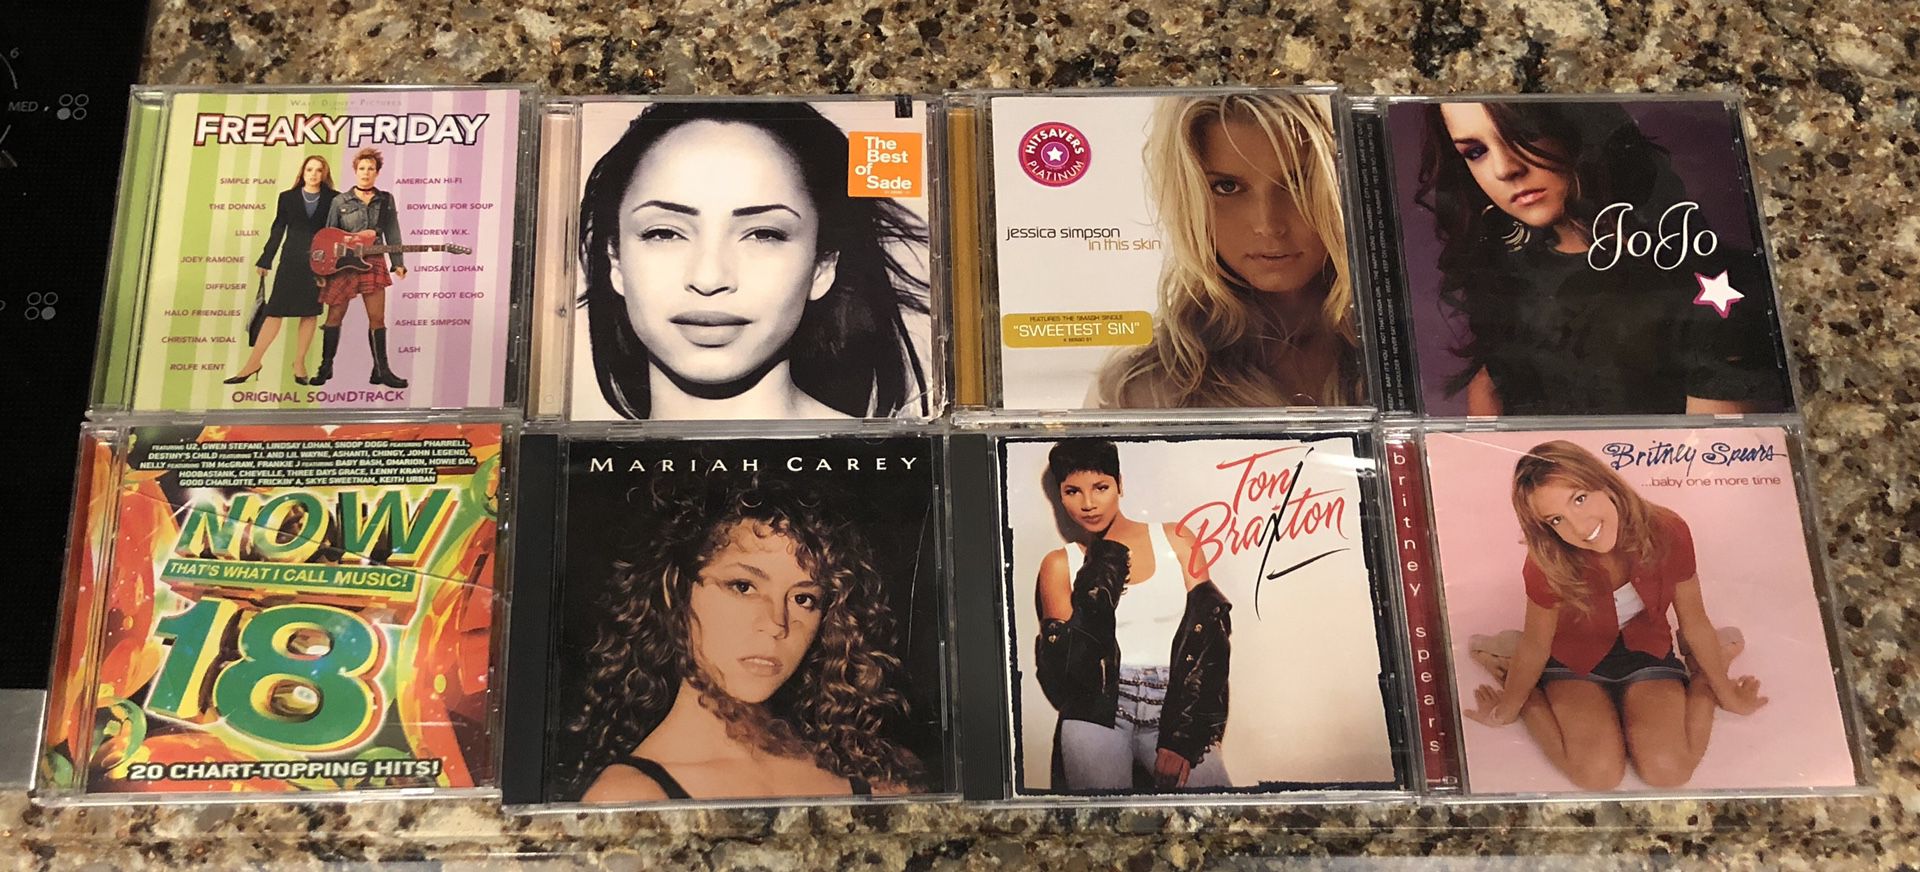 CDs of Pop Music $1 each